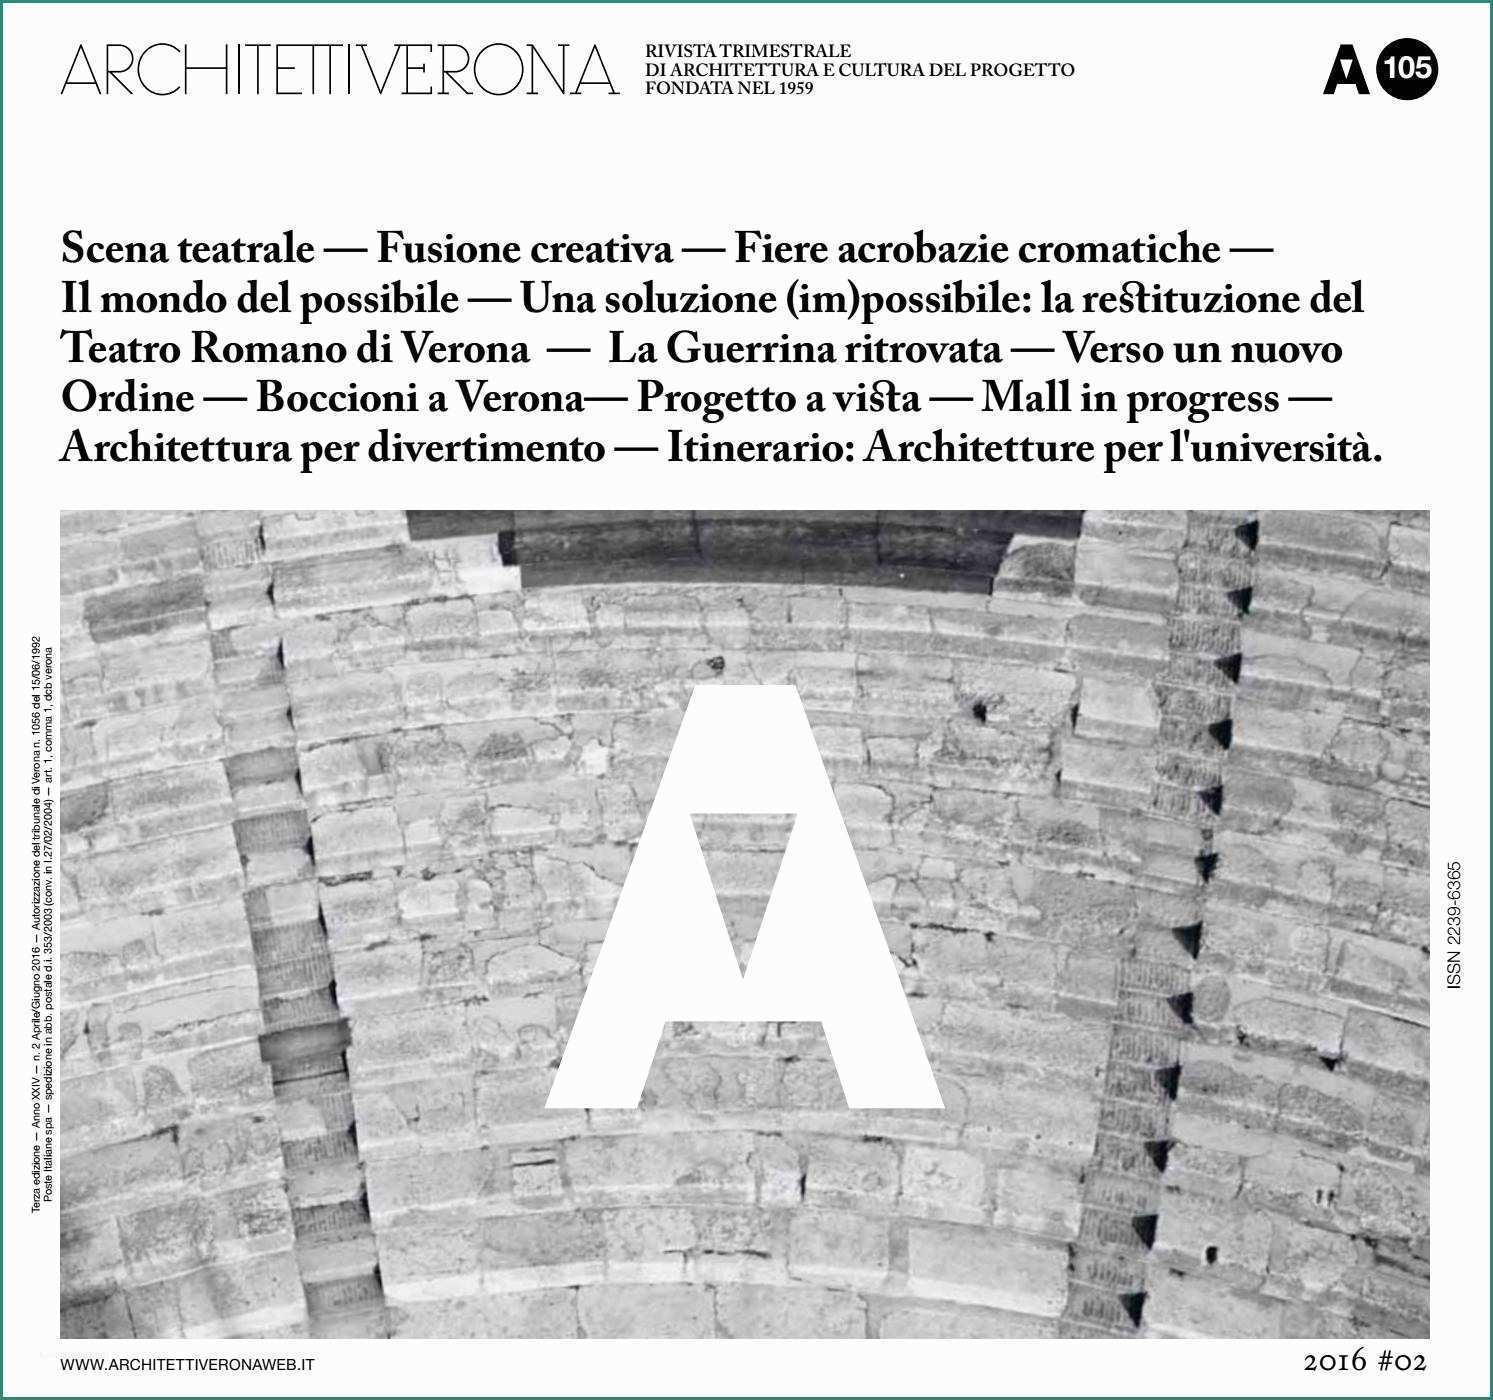 Parete Cartongesso Dwg E Architettiverona 105 by Architettiverona issuu